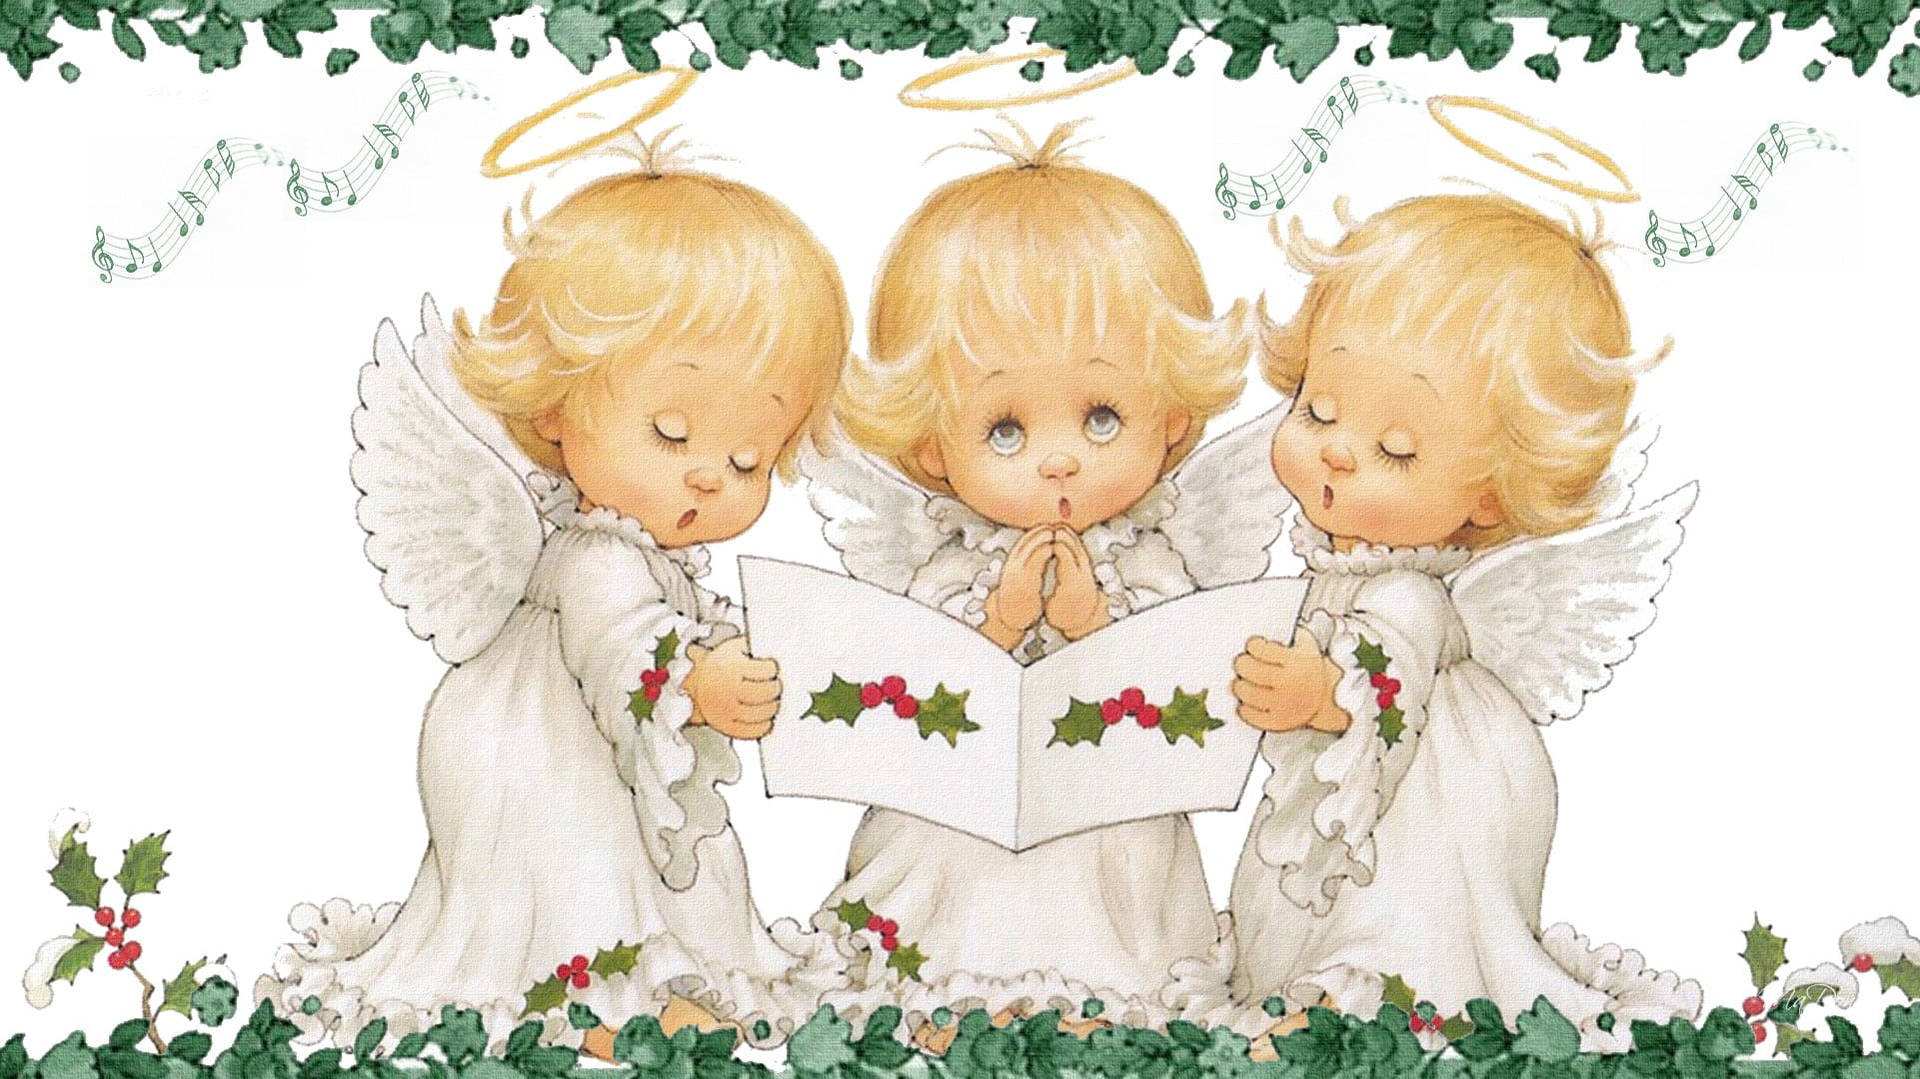 Joyful Harmony - Singing Christmas Angels Background